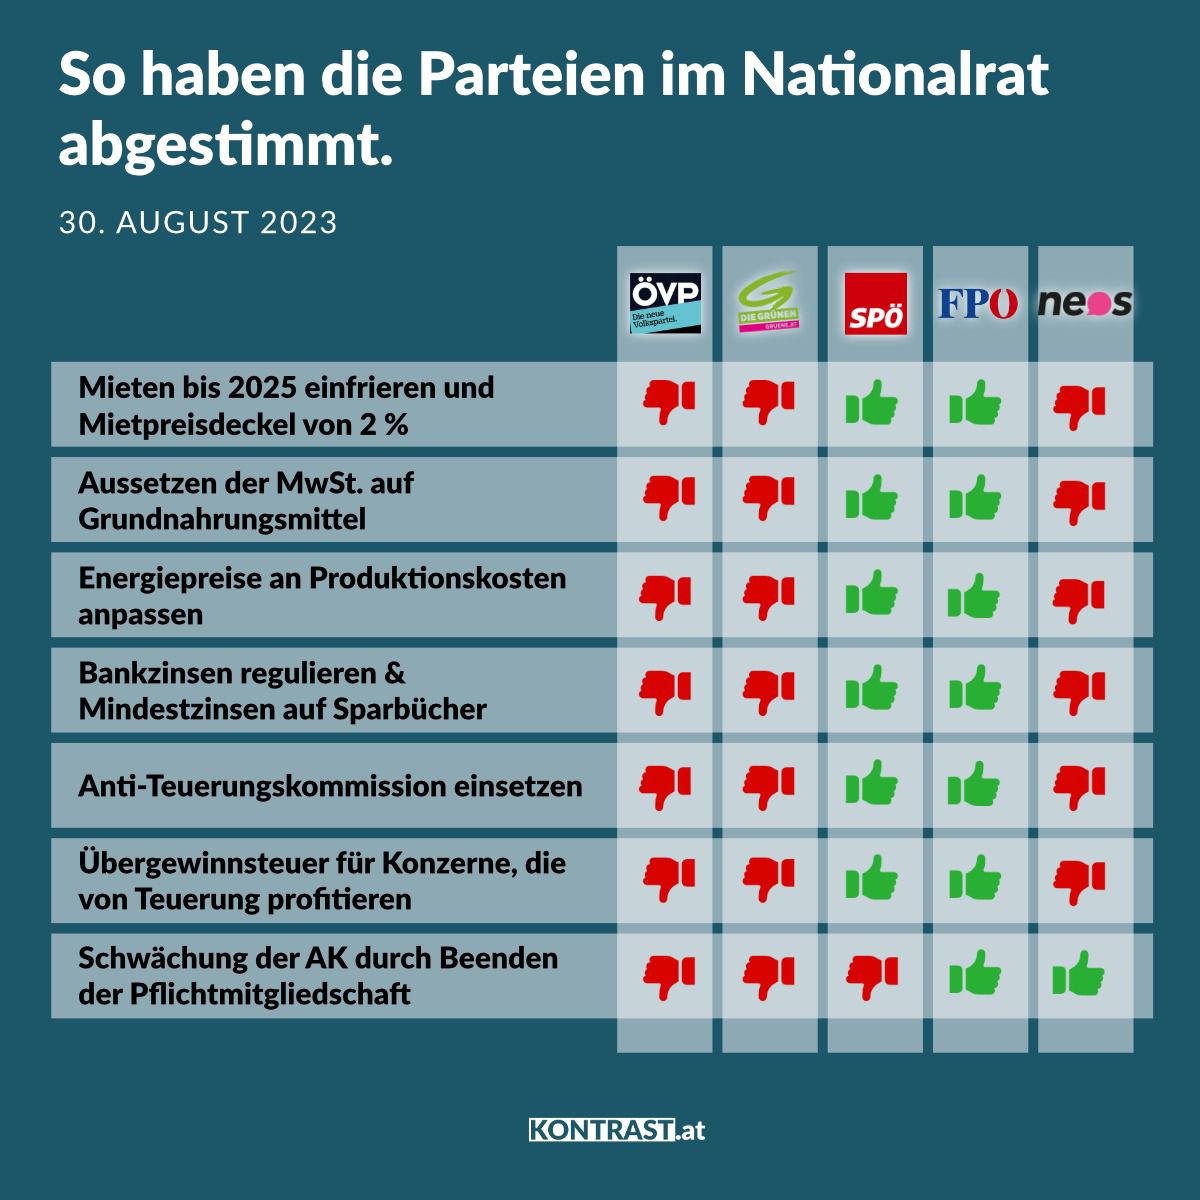 Nationalratssitzung am 30. August 2023: So haben die Parteien abgestimmt